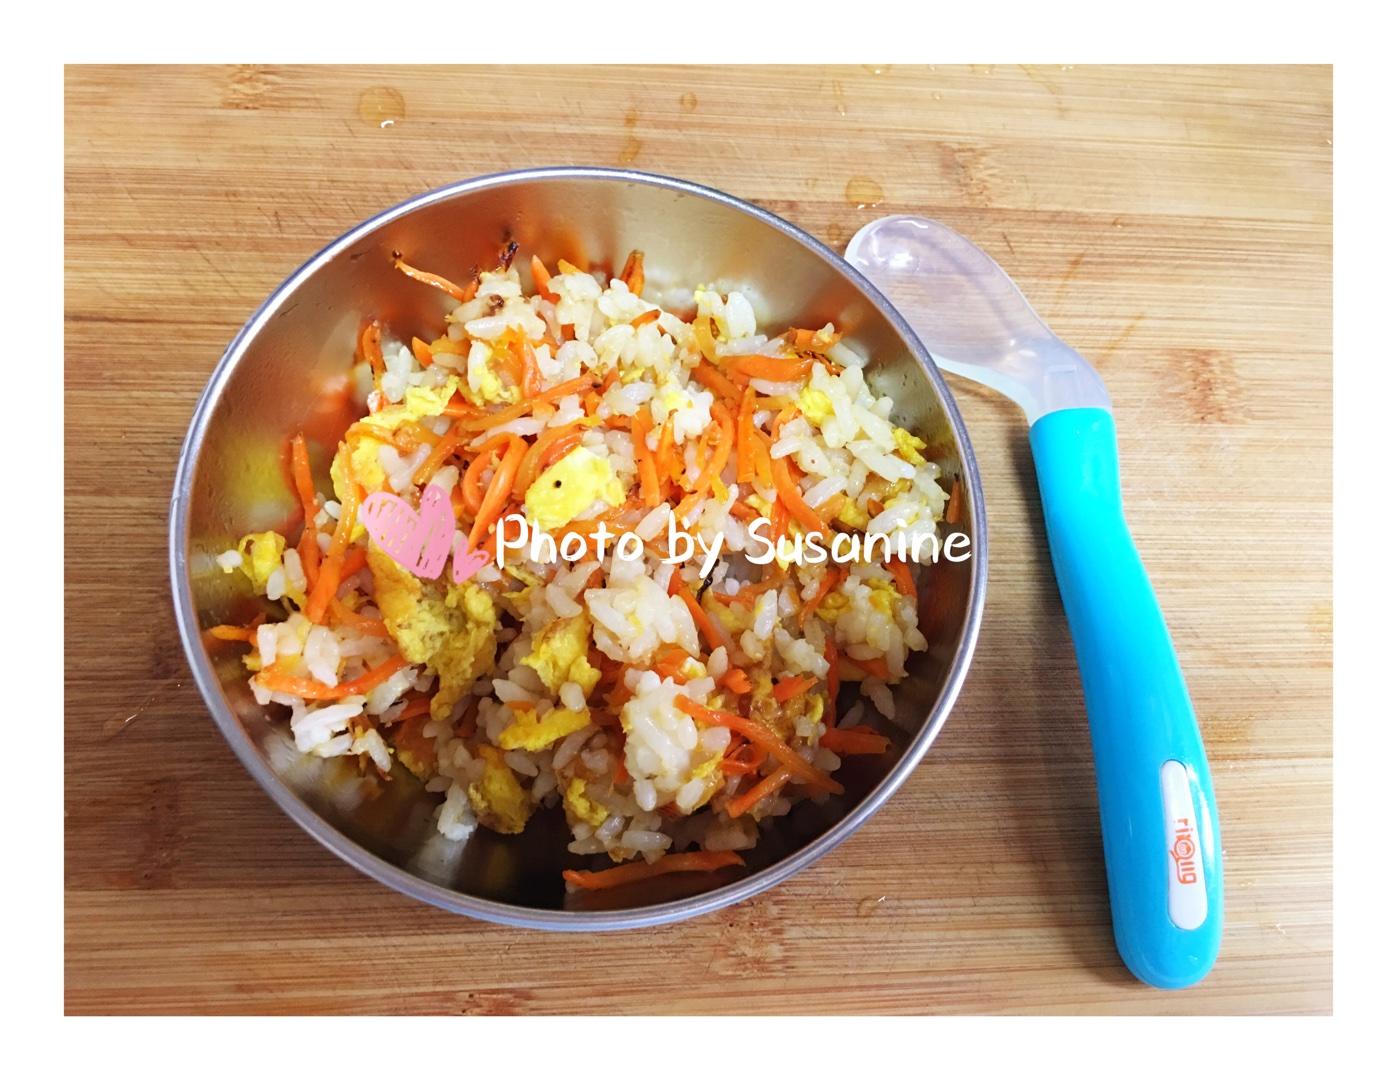 鸡蛋胡萝卜炒饭 1.5～2岁宝宝餐的做法